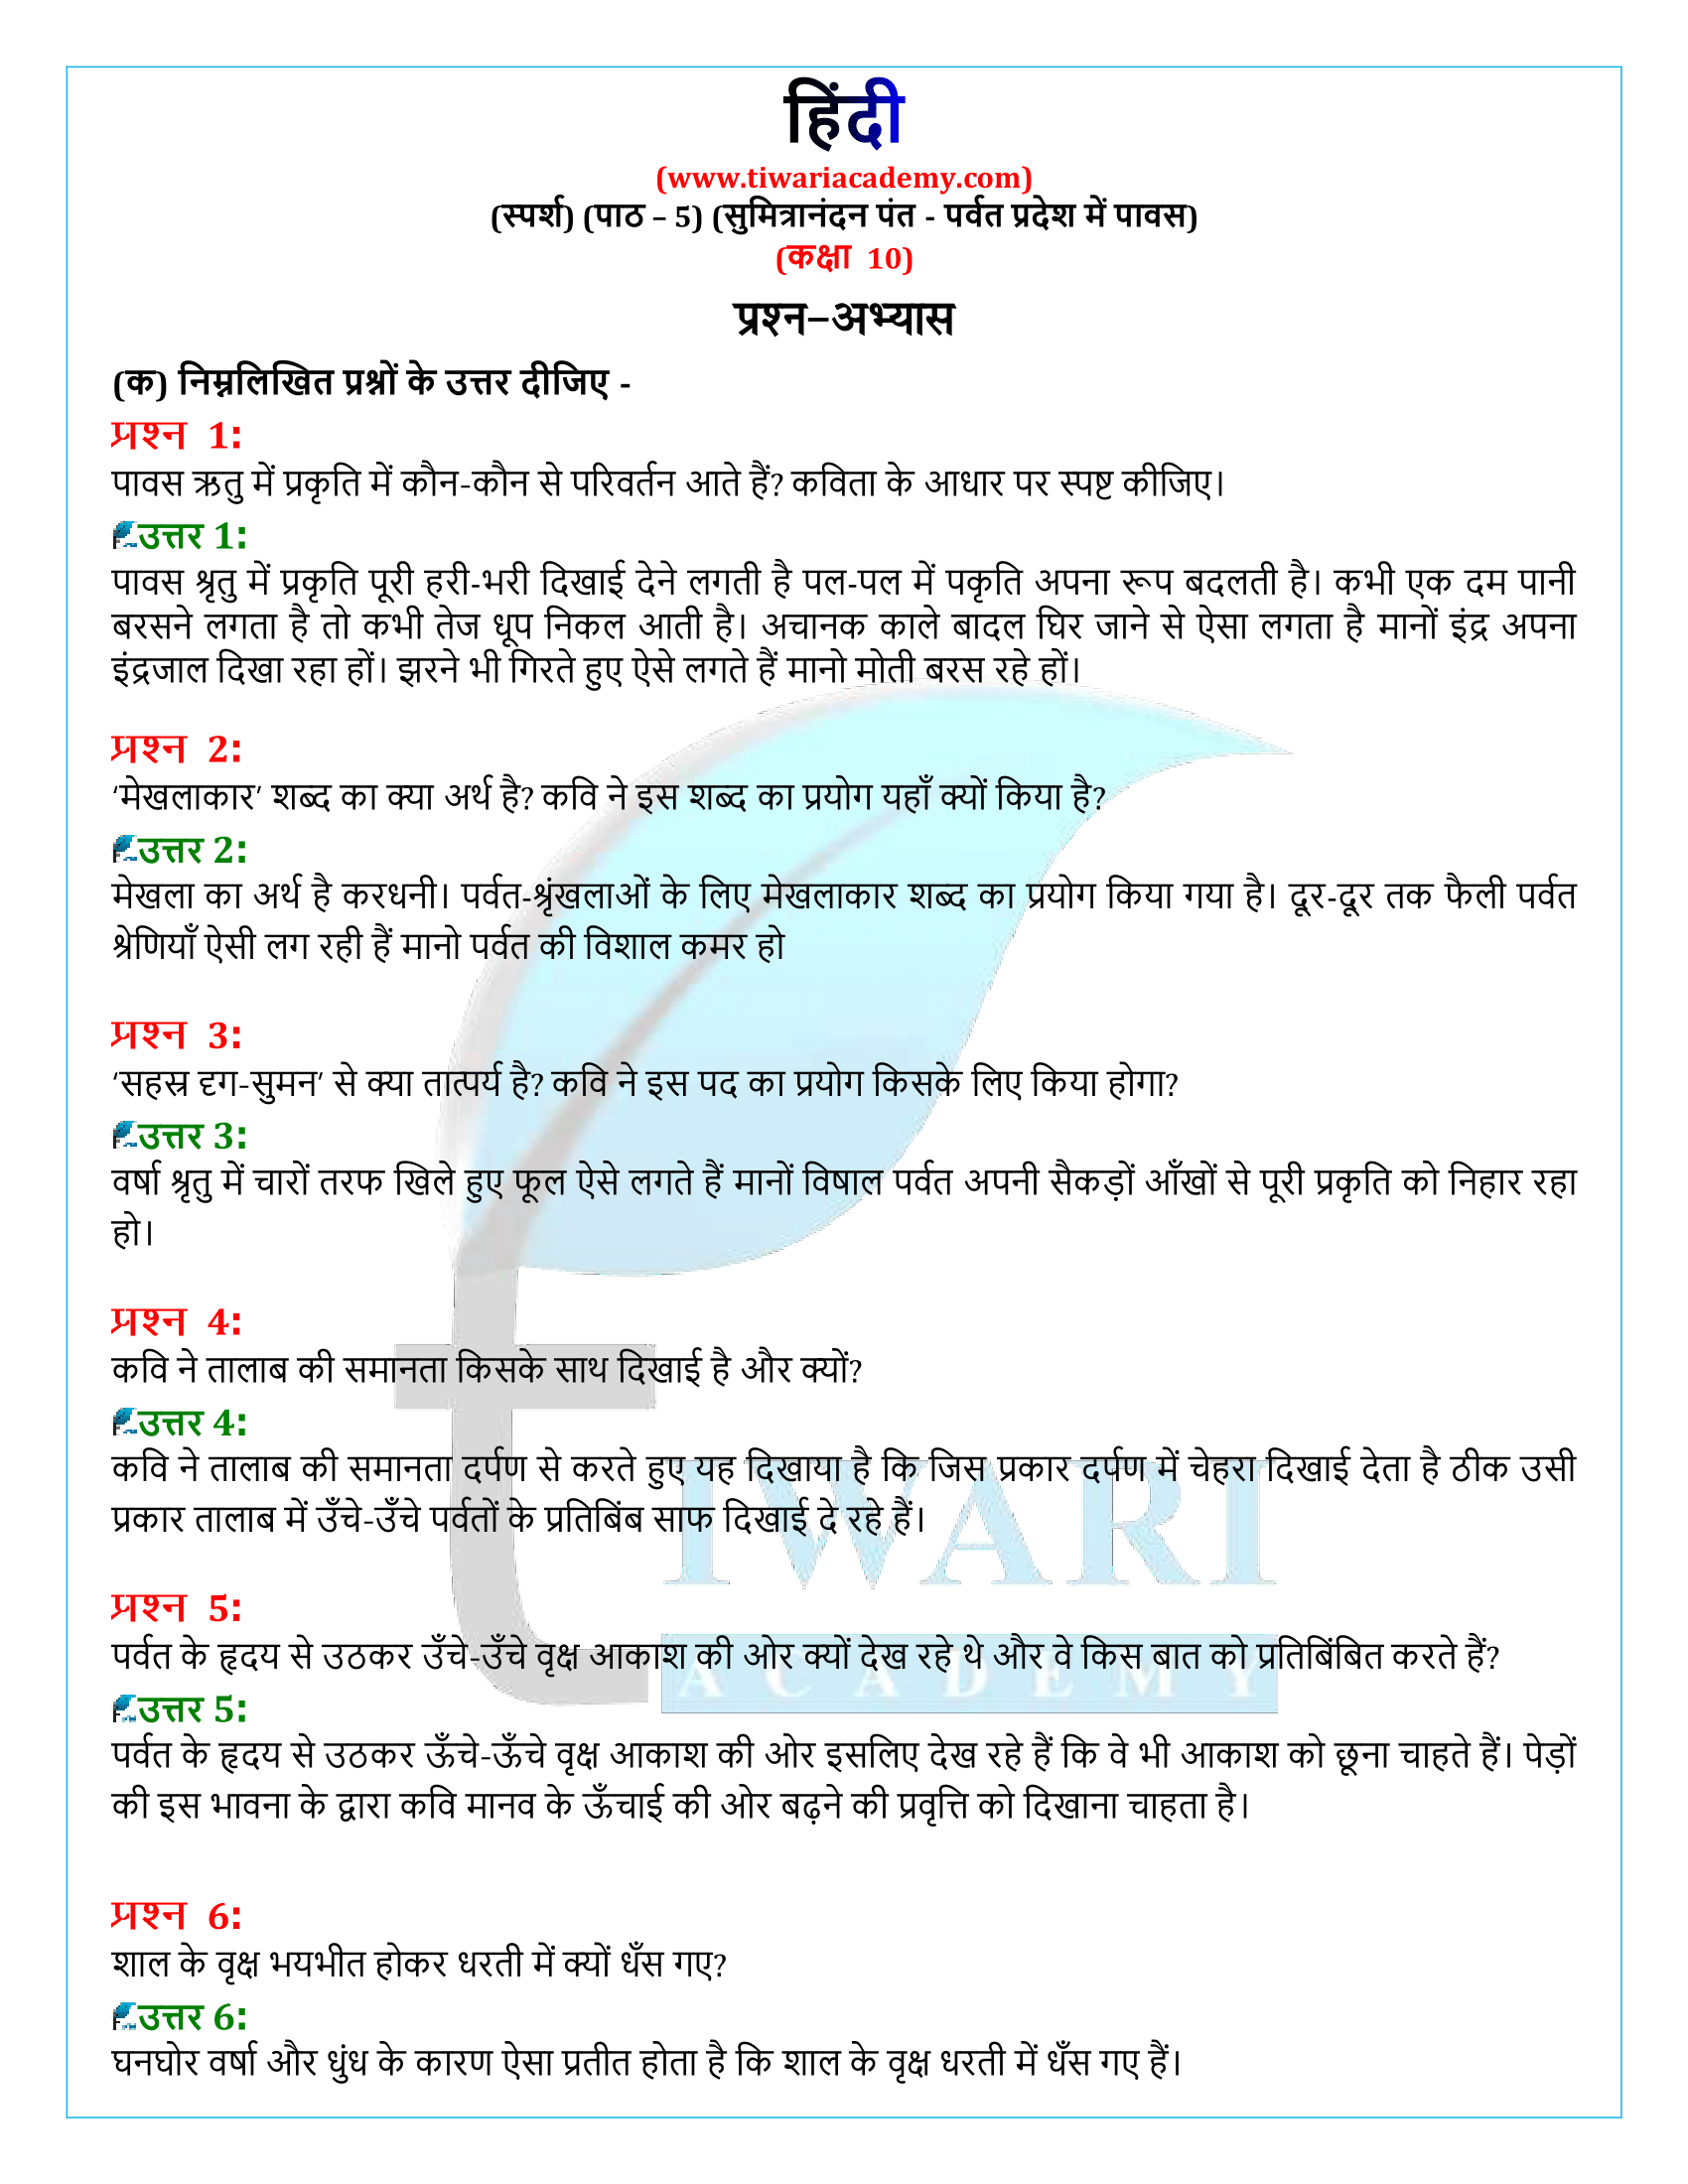 कक्षा 10 हिंदी स्पर्श अध्याय 5 के प्रश्न उत्तर